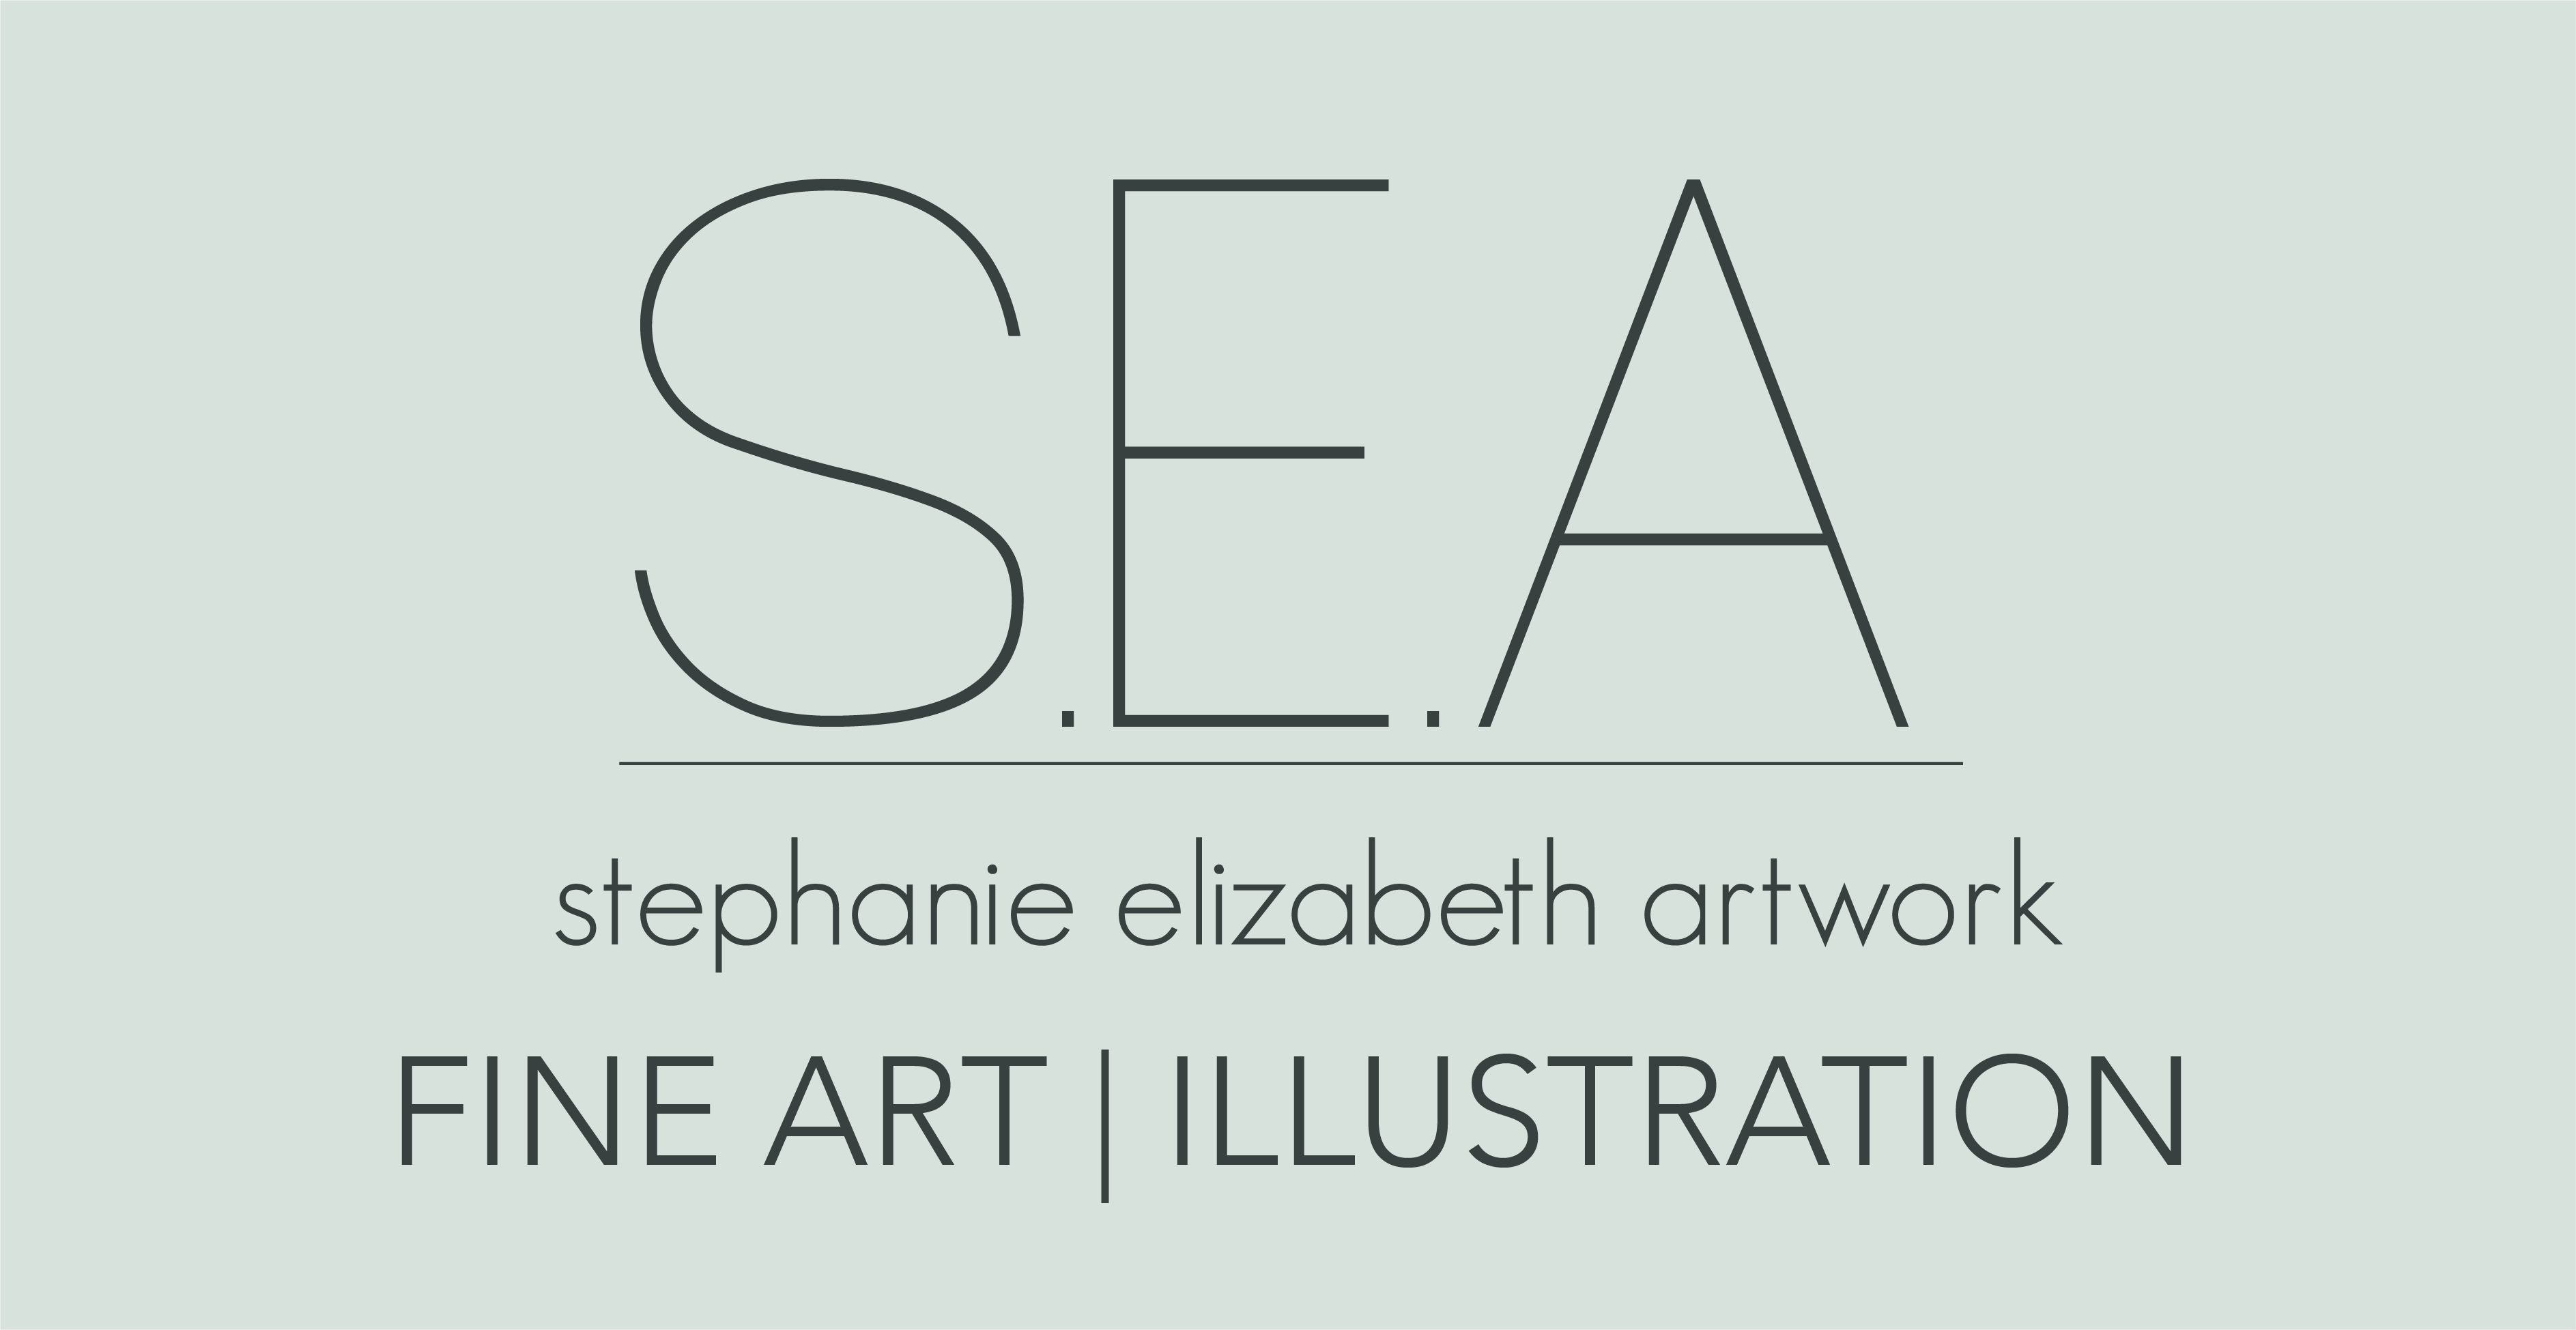 Stephanie Elizabeth Artwork Illustration and fine art commissions, original artwork, prints and workshops